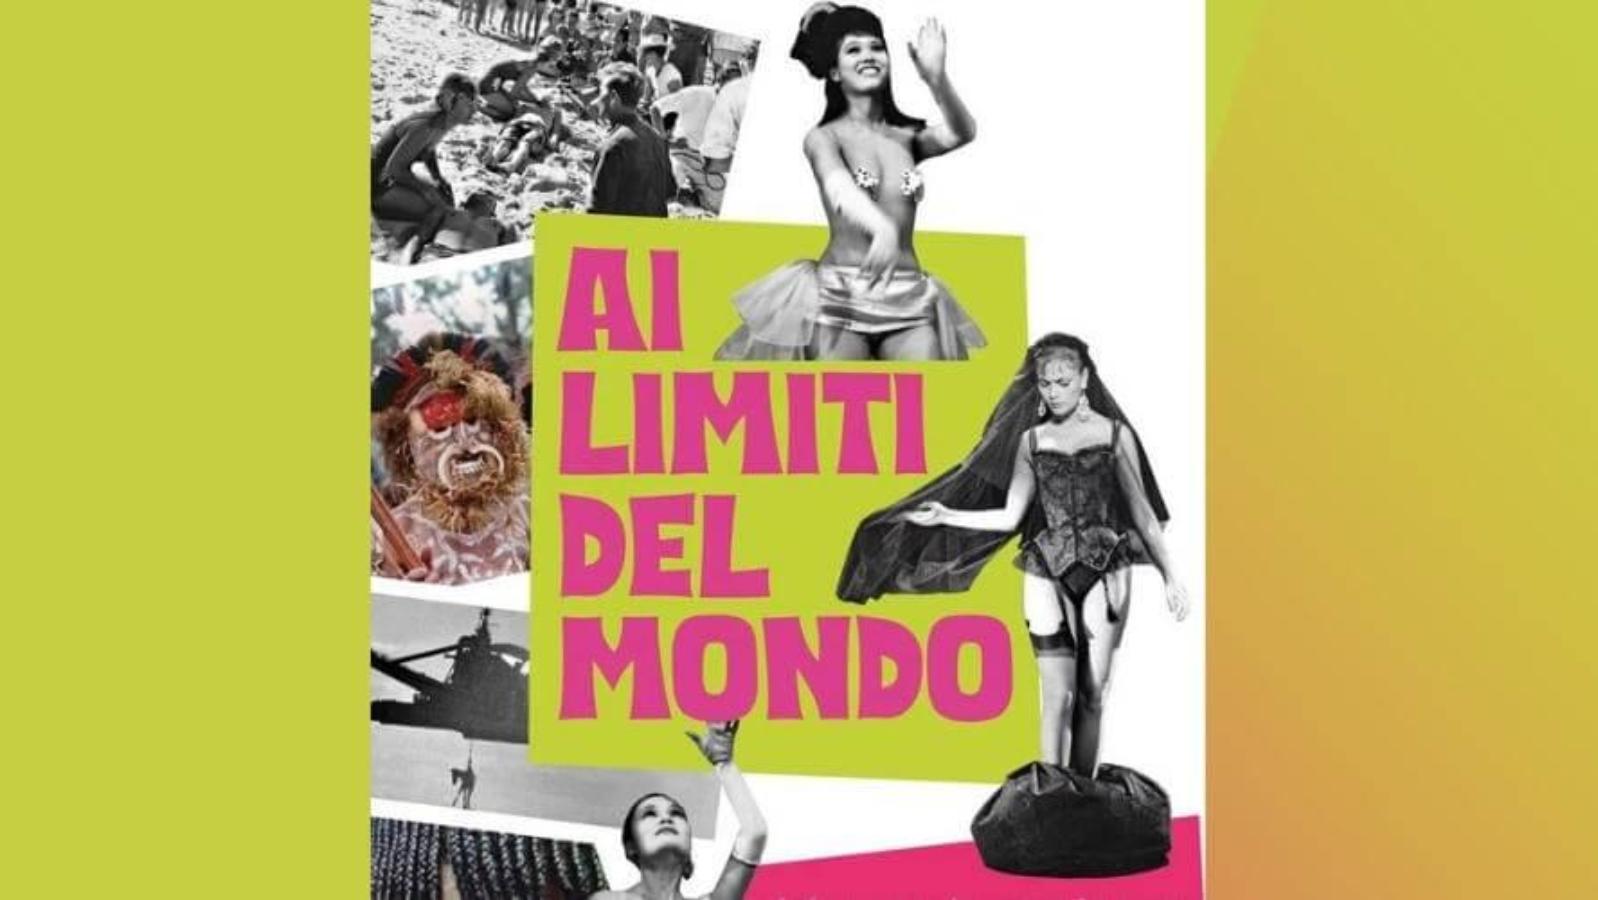 AI LIMITI DEL MONDO_exhibition